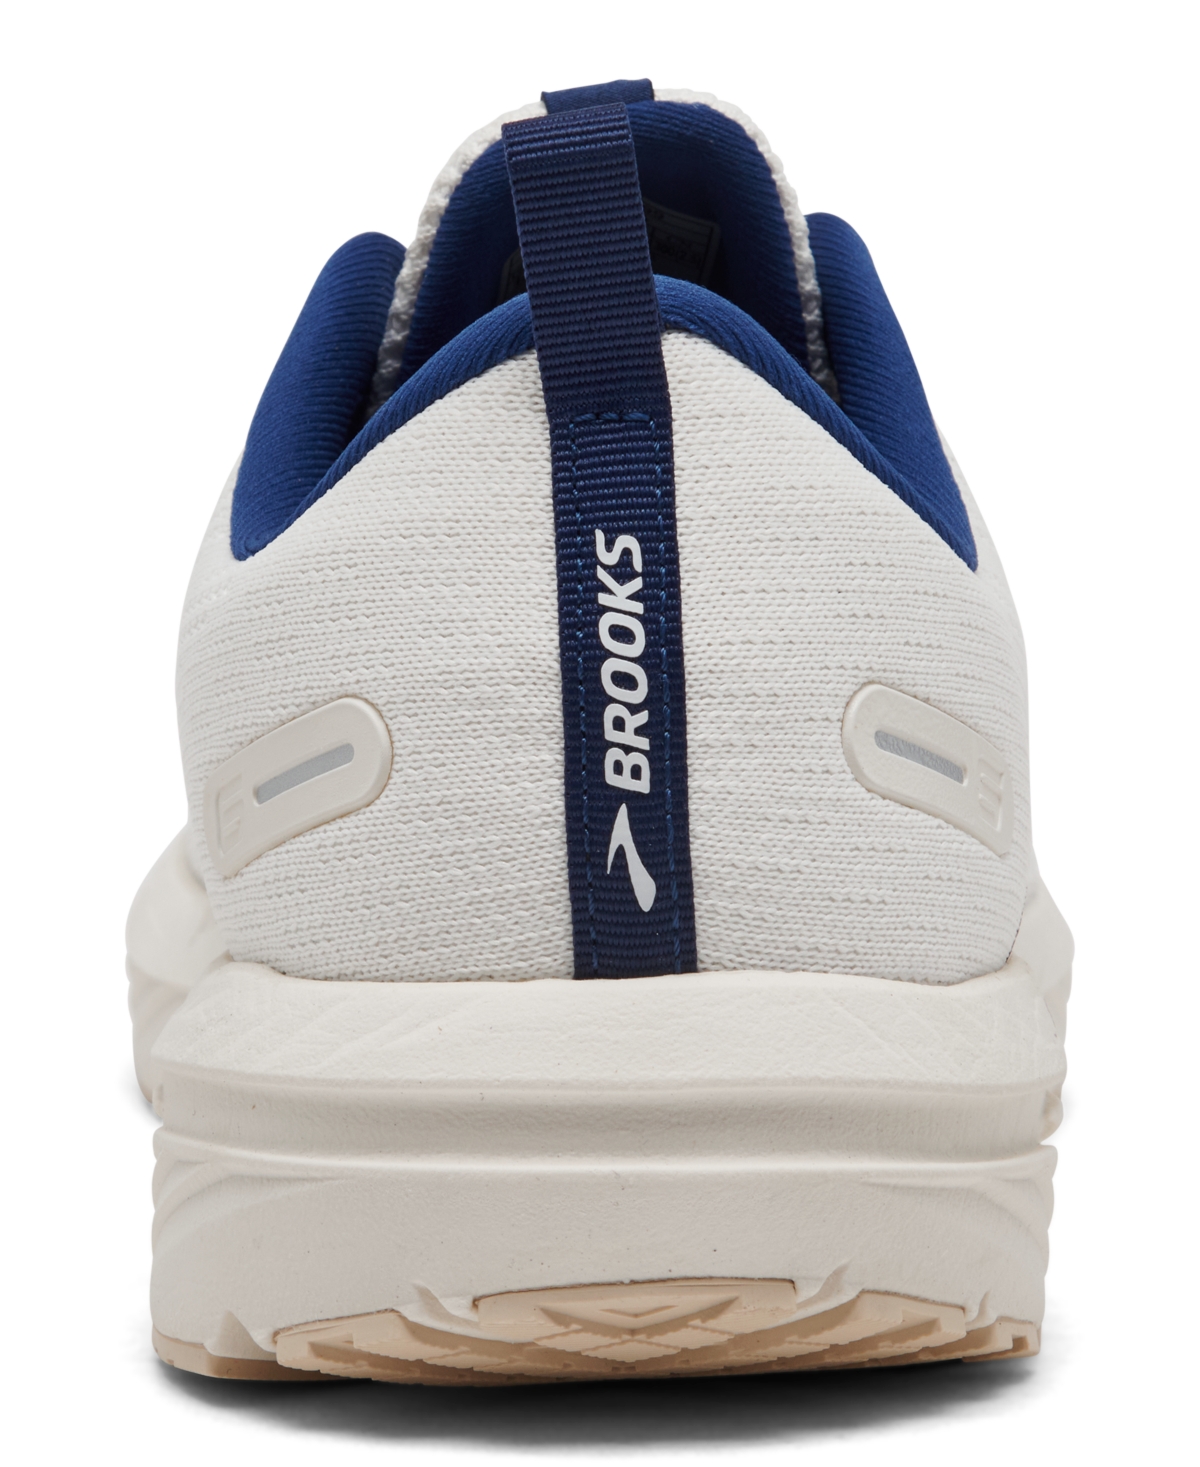 Shop Brooks Men's Revel 6 Running Sneakers From Finish Line In White,marshmallow,blue